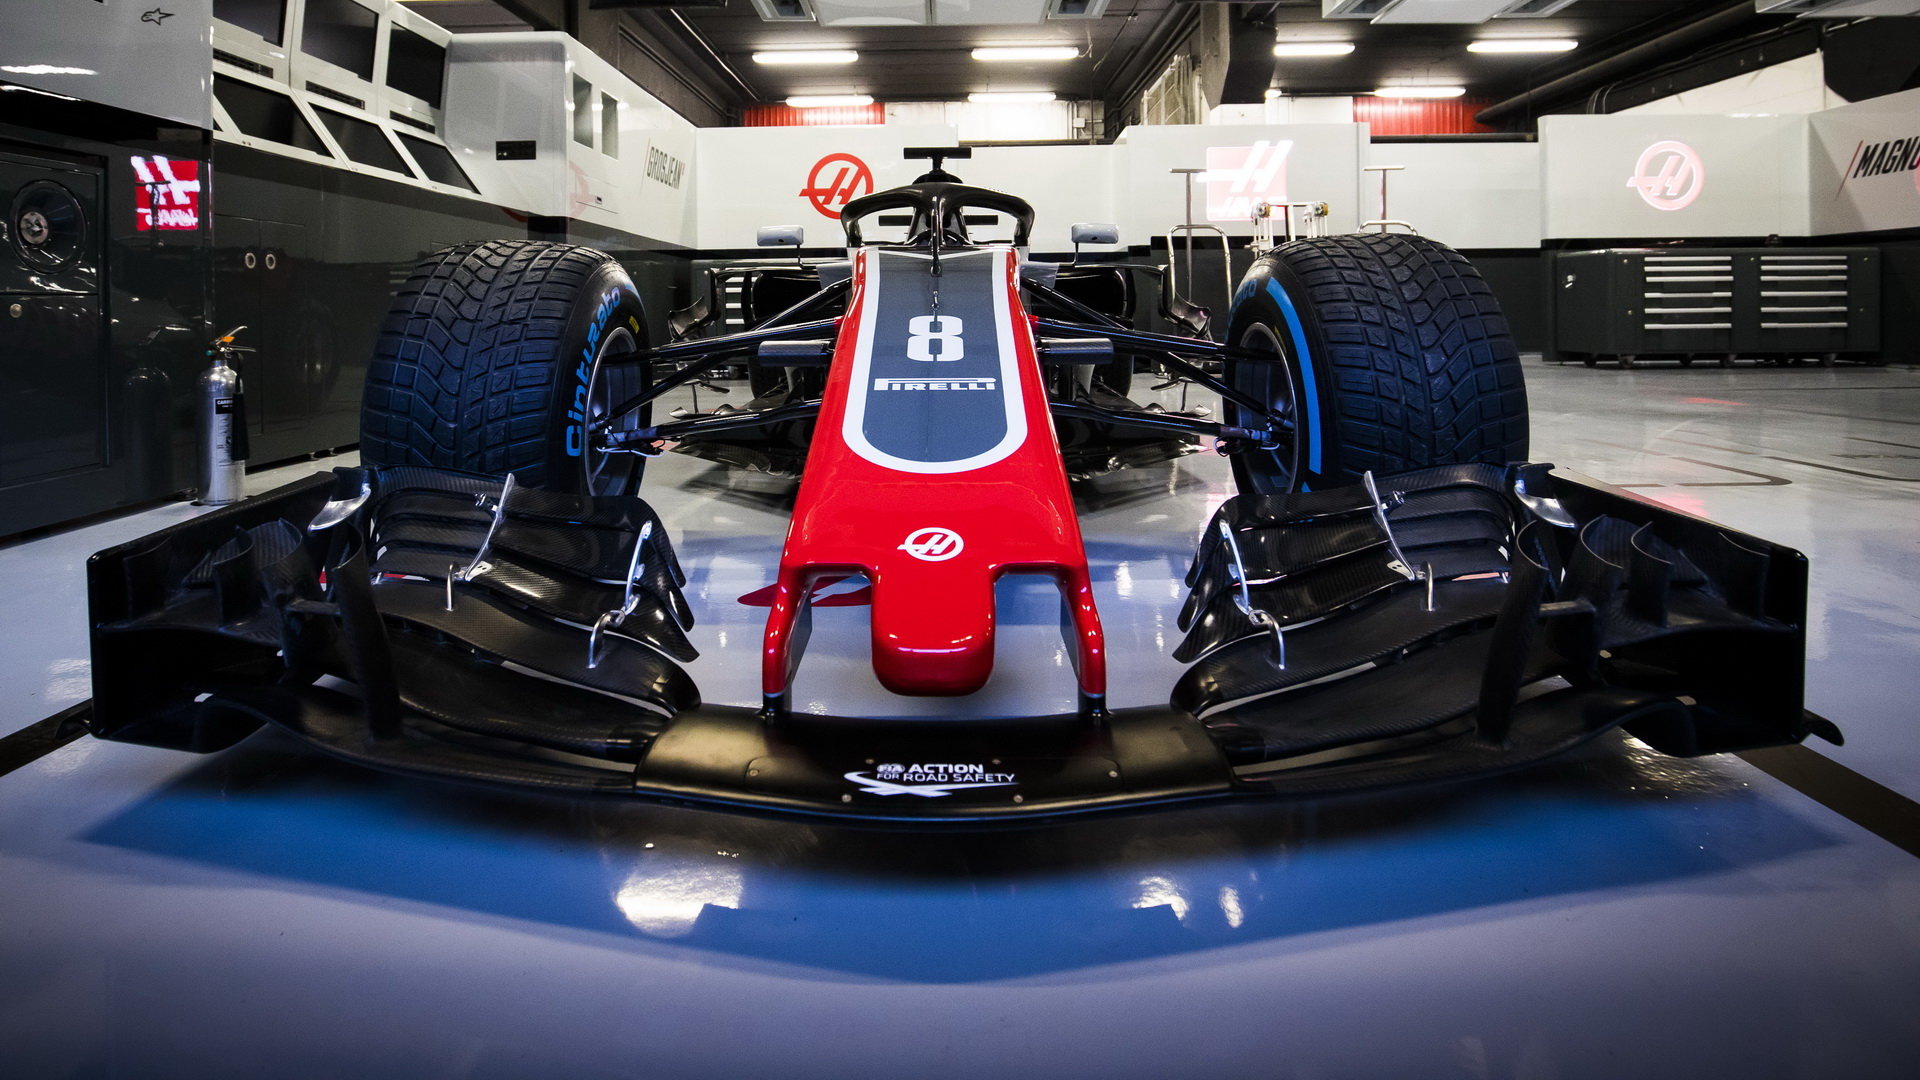 Představení nového vozu Haas VF-18 Ferrari pro sezónu 2018